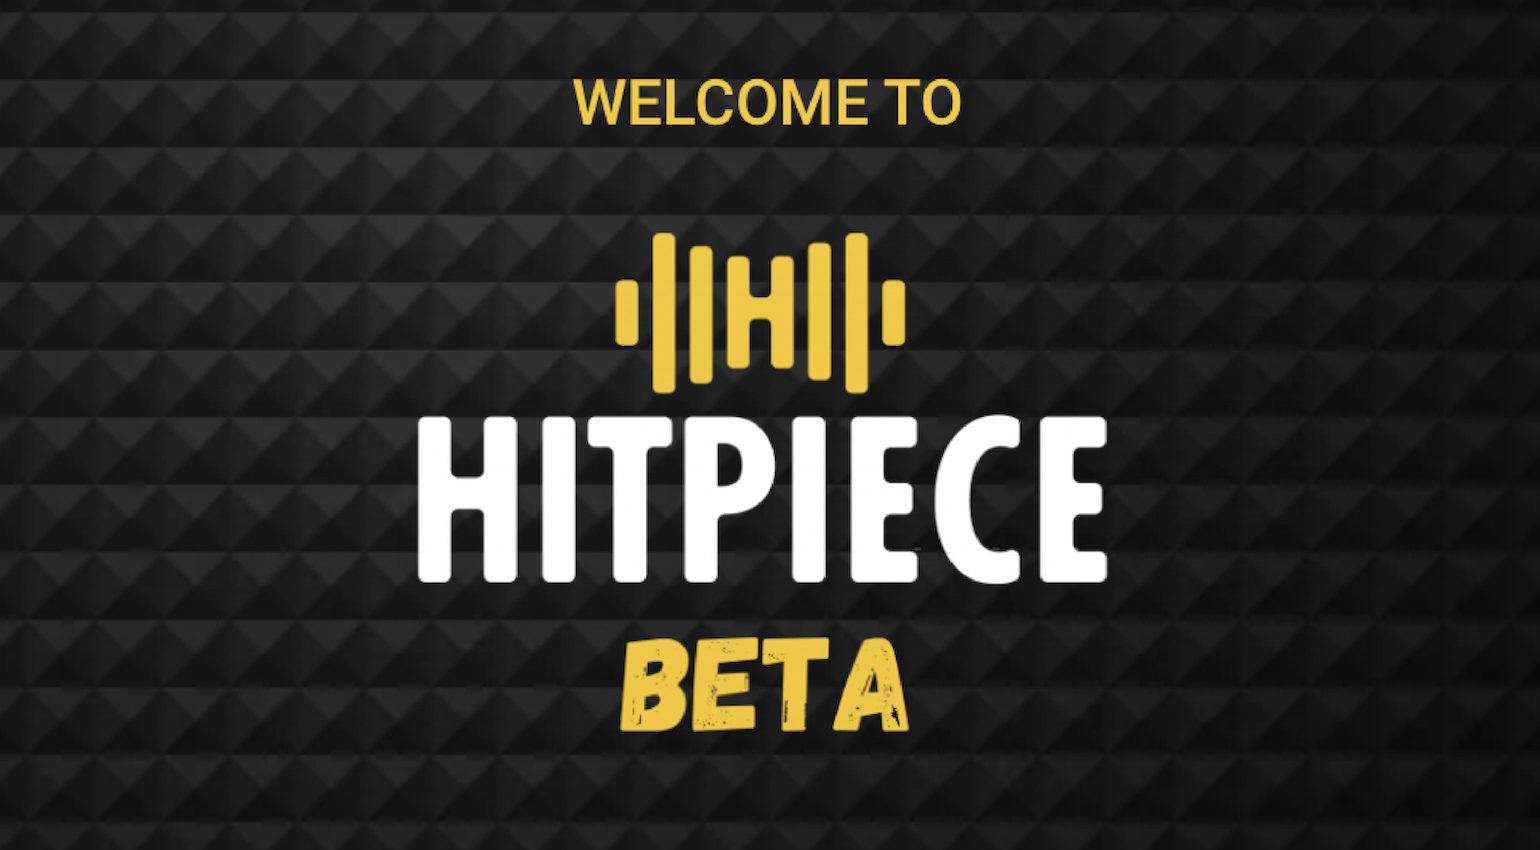 Rencontrez Hitpiece, une arnaque NFT destinée à l'artiste réticent